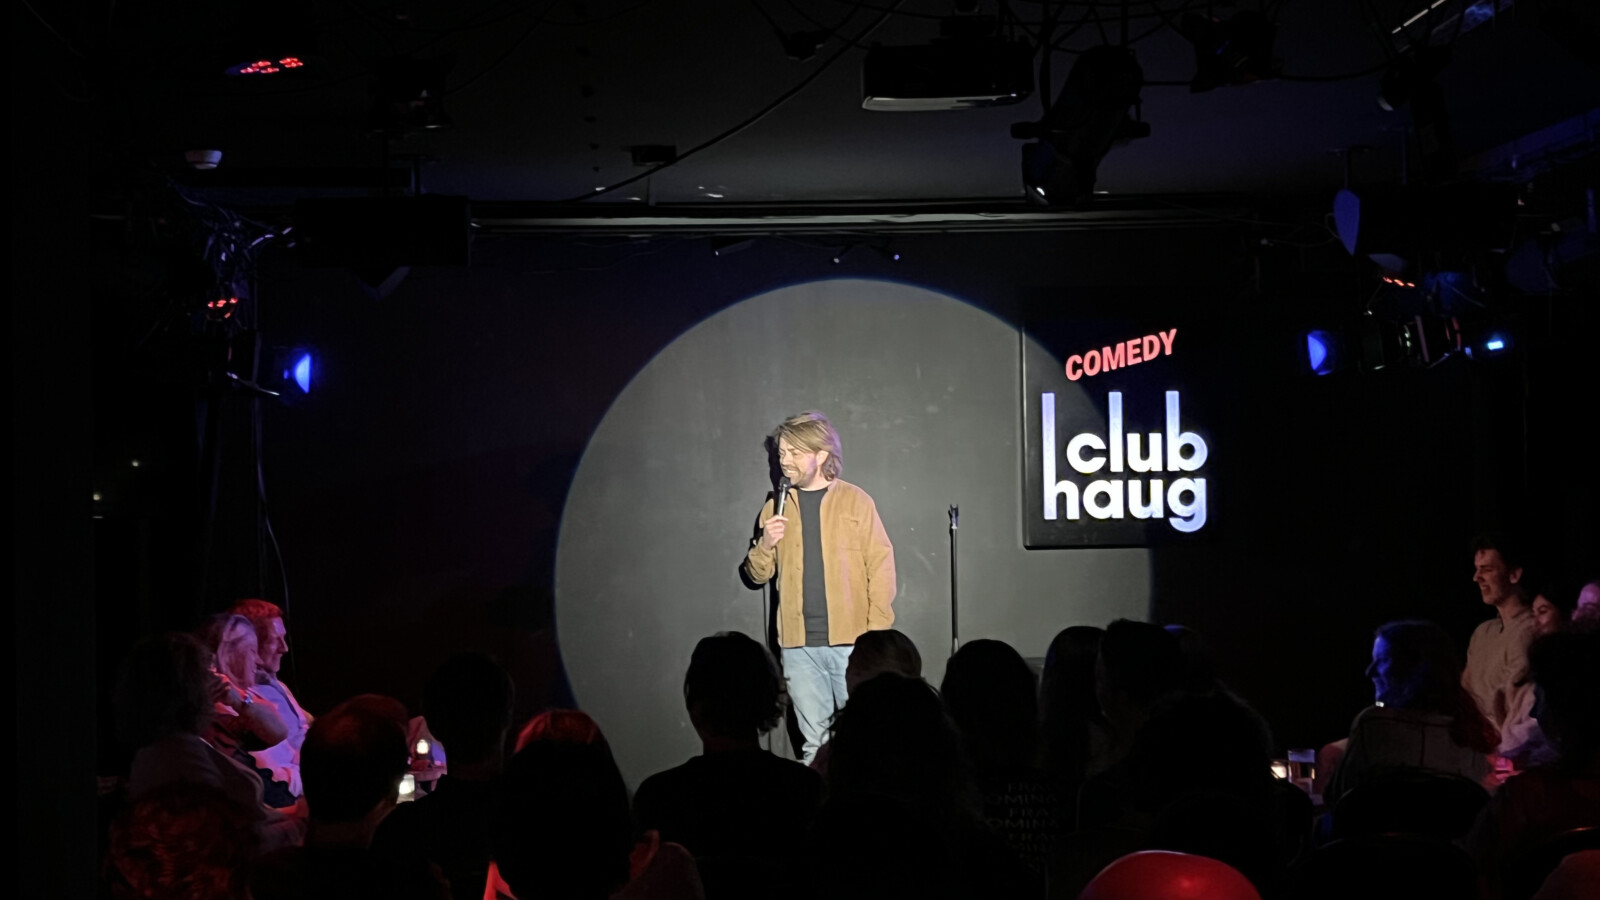 Performance Comedy Club Haug Rotterdam